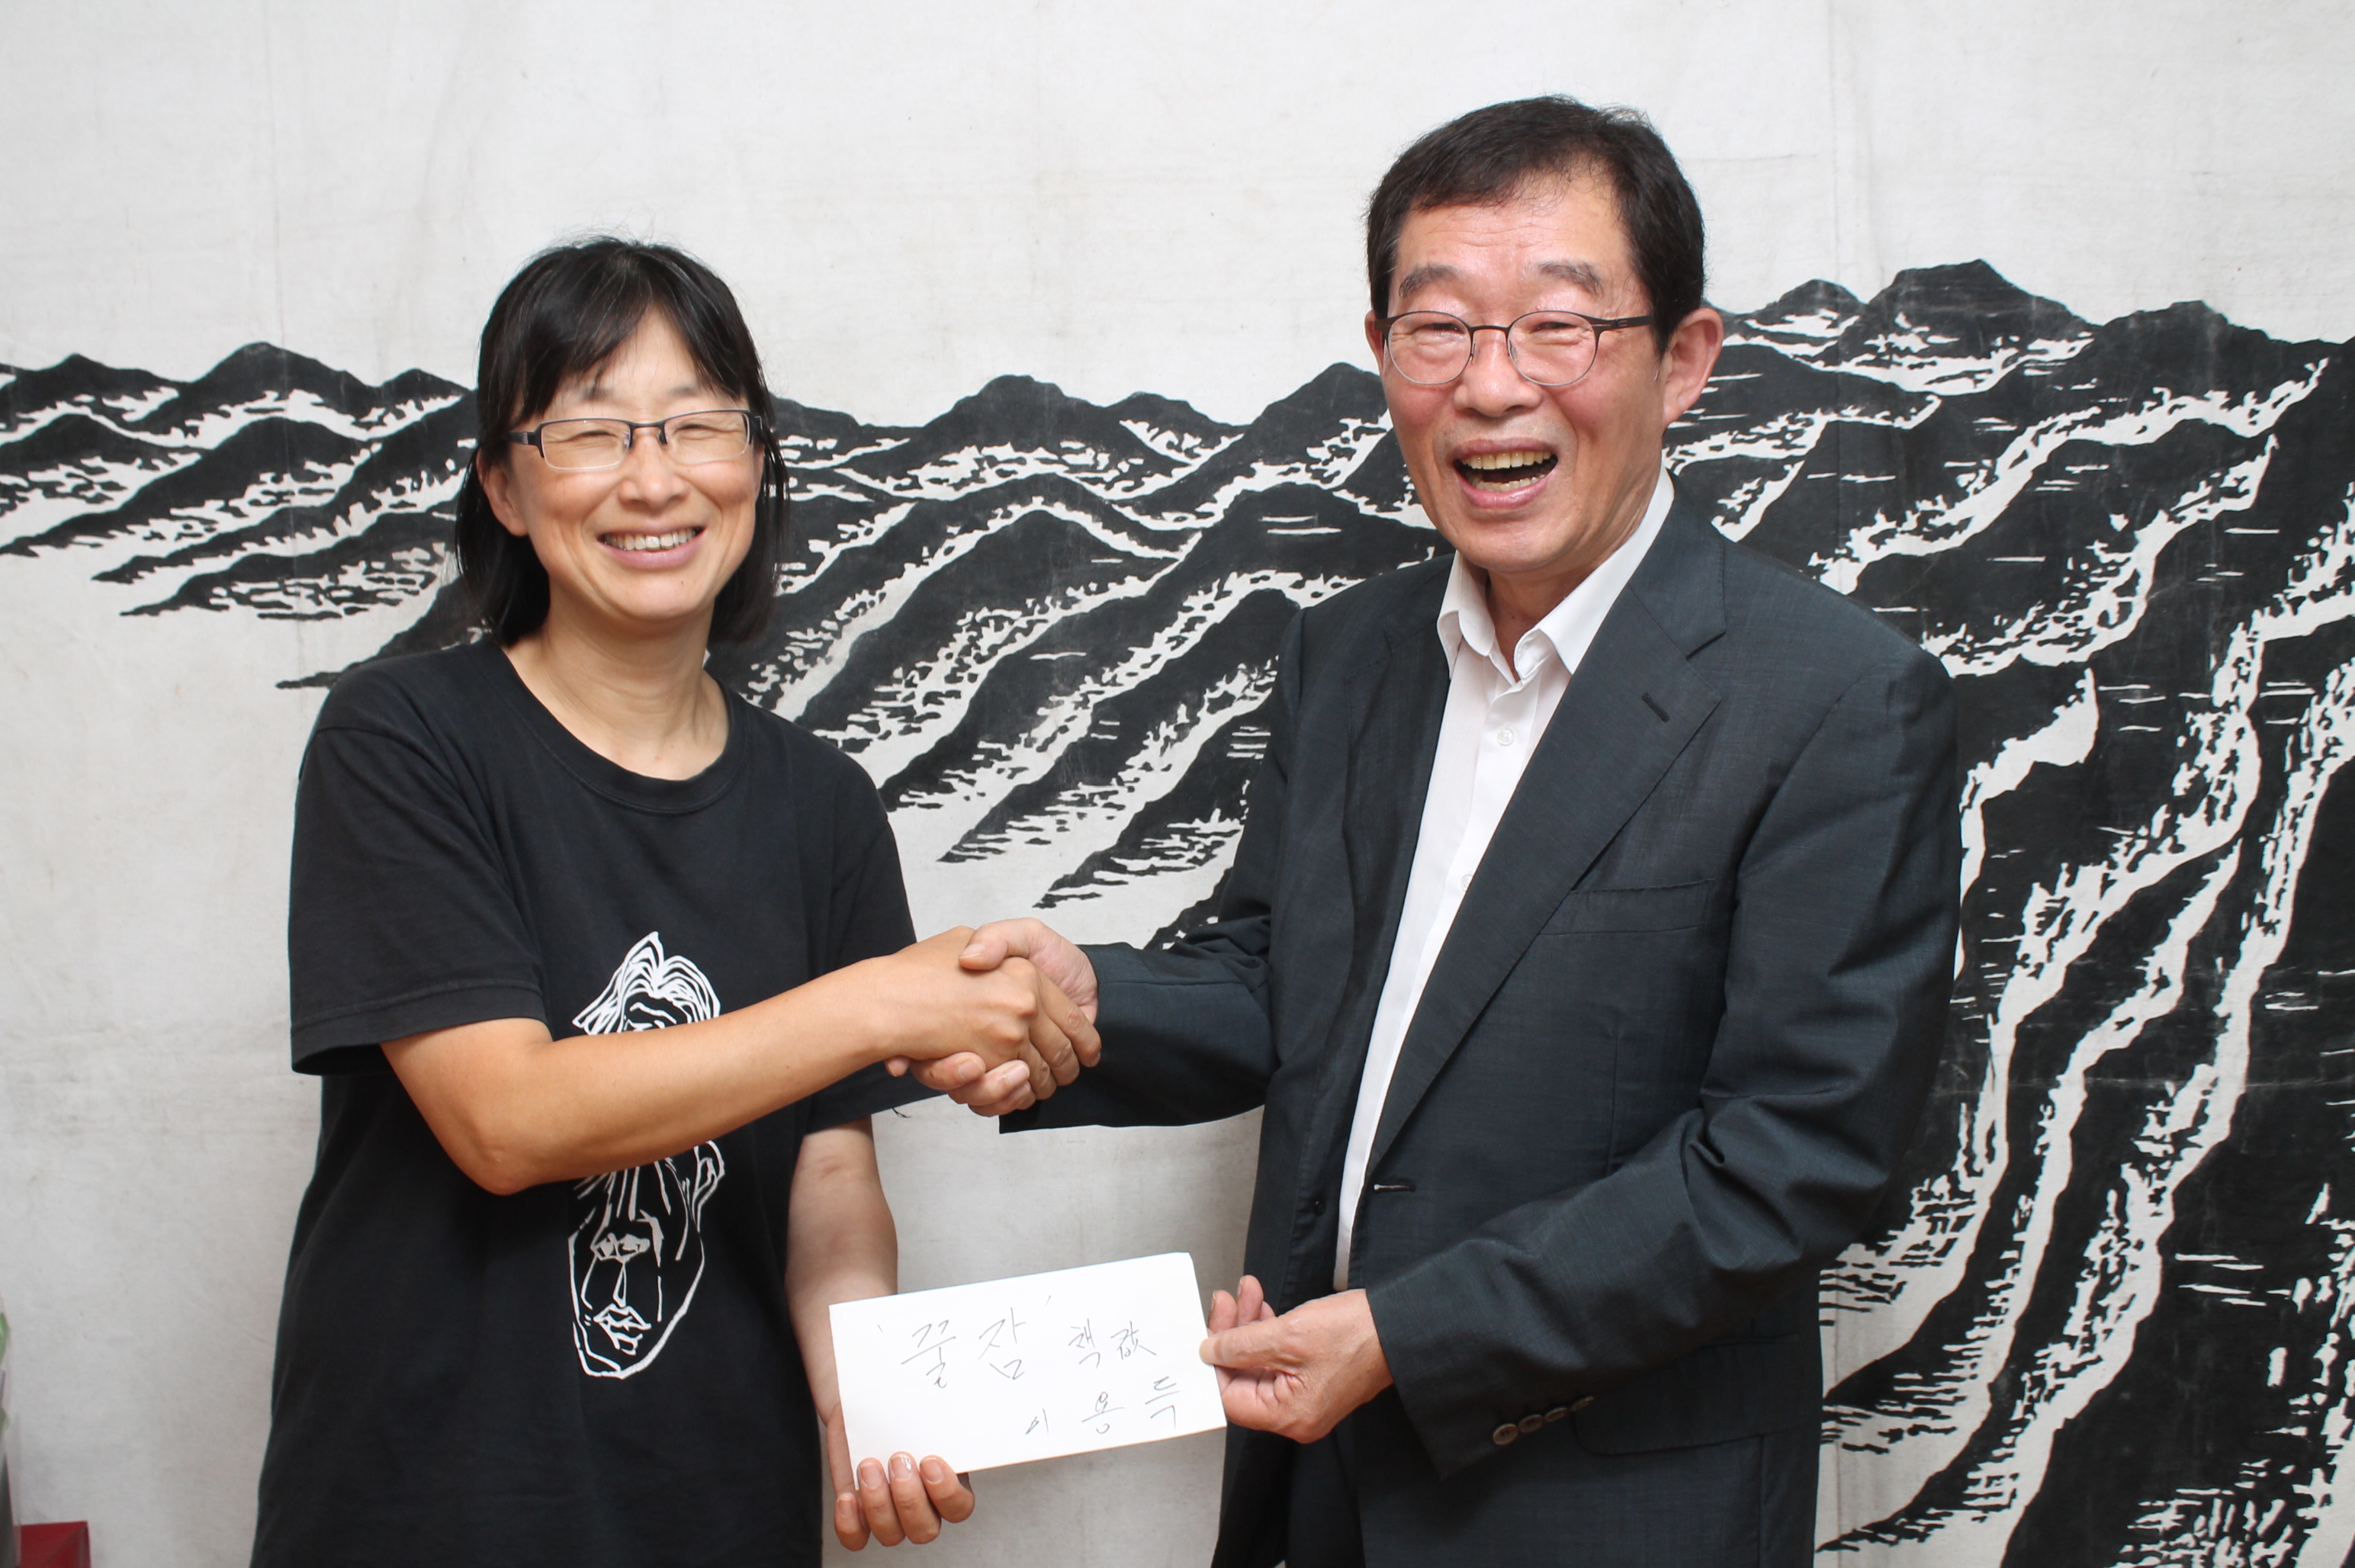 이용득 의원이 김소연 비정규노동자의 쉼터 꿀잠 운영위원장에게 500만원을 전달했다. 대담집 <두 어른>을 사전 구매하기 위해서다.